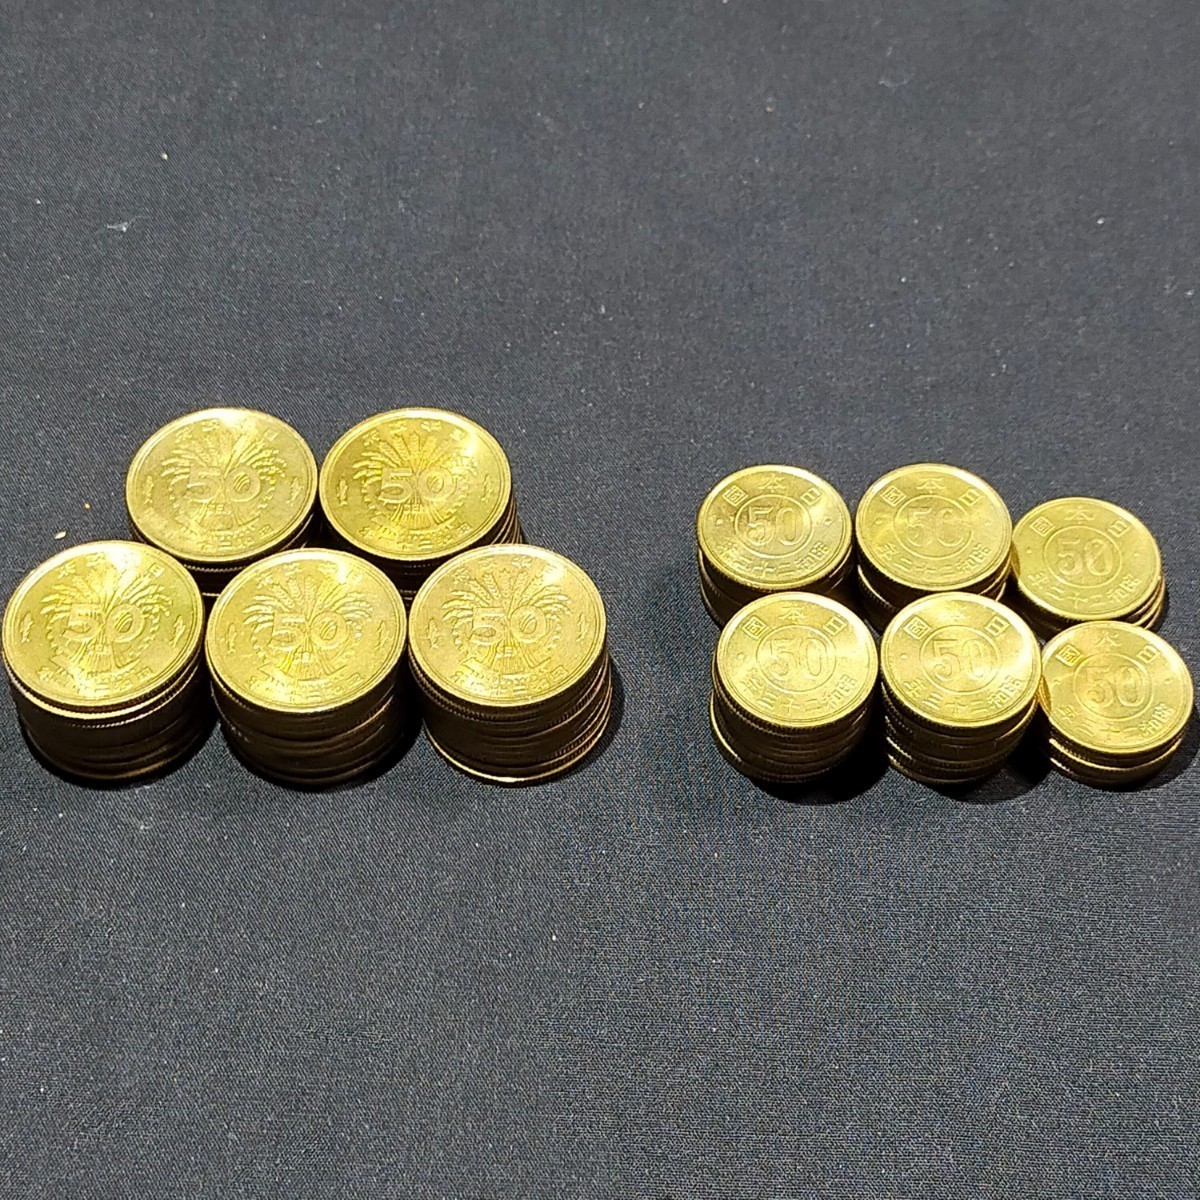 古銭 枚 大型銭黄銅貨 枚 小型銭黄銅貨 昭和枚 昭和